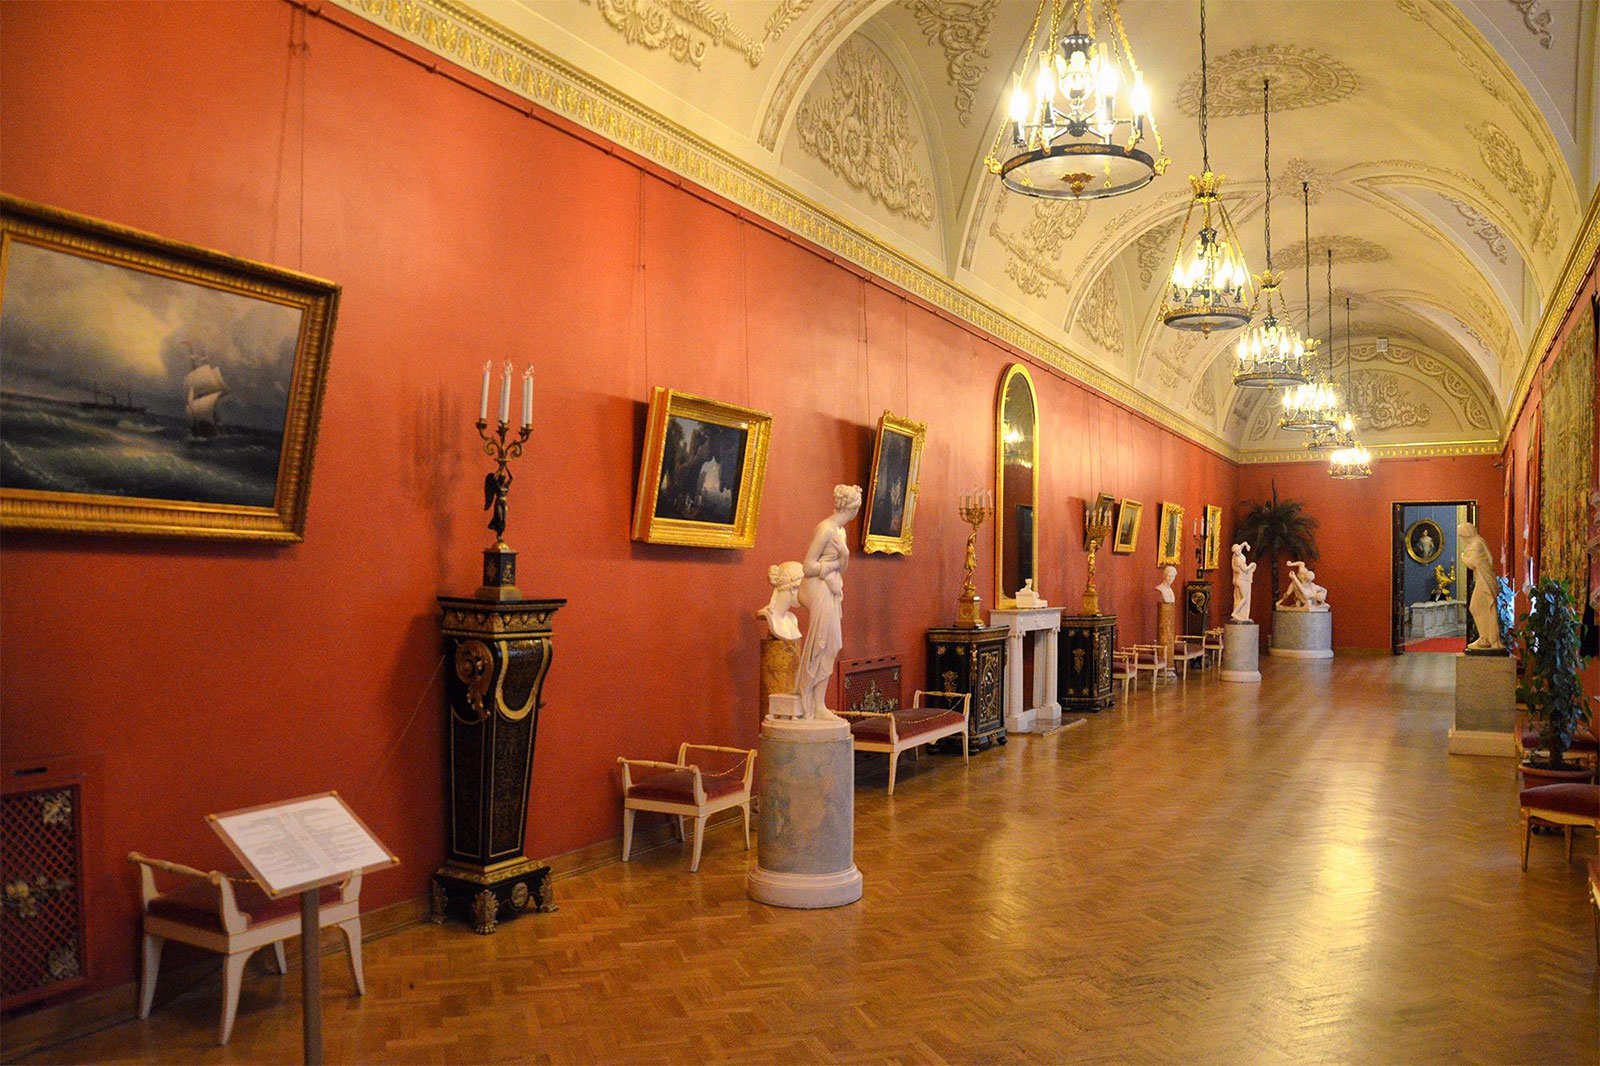 Античный зал в Юсуповском дворце на Мойке в Санкт-Петербурге